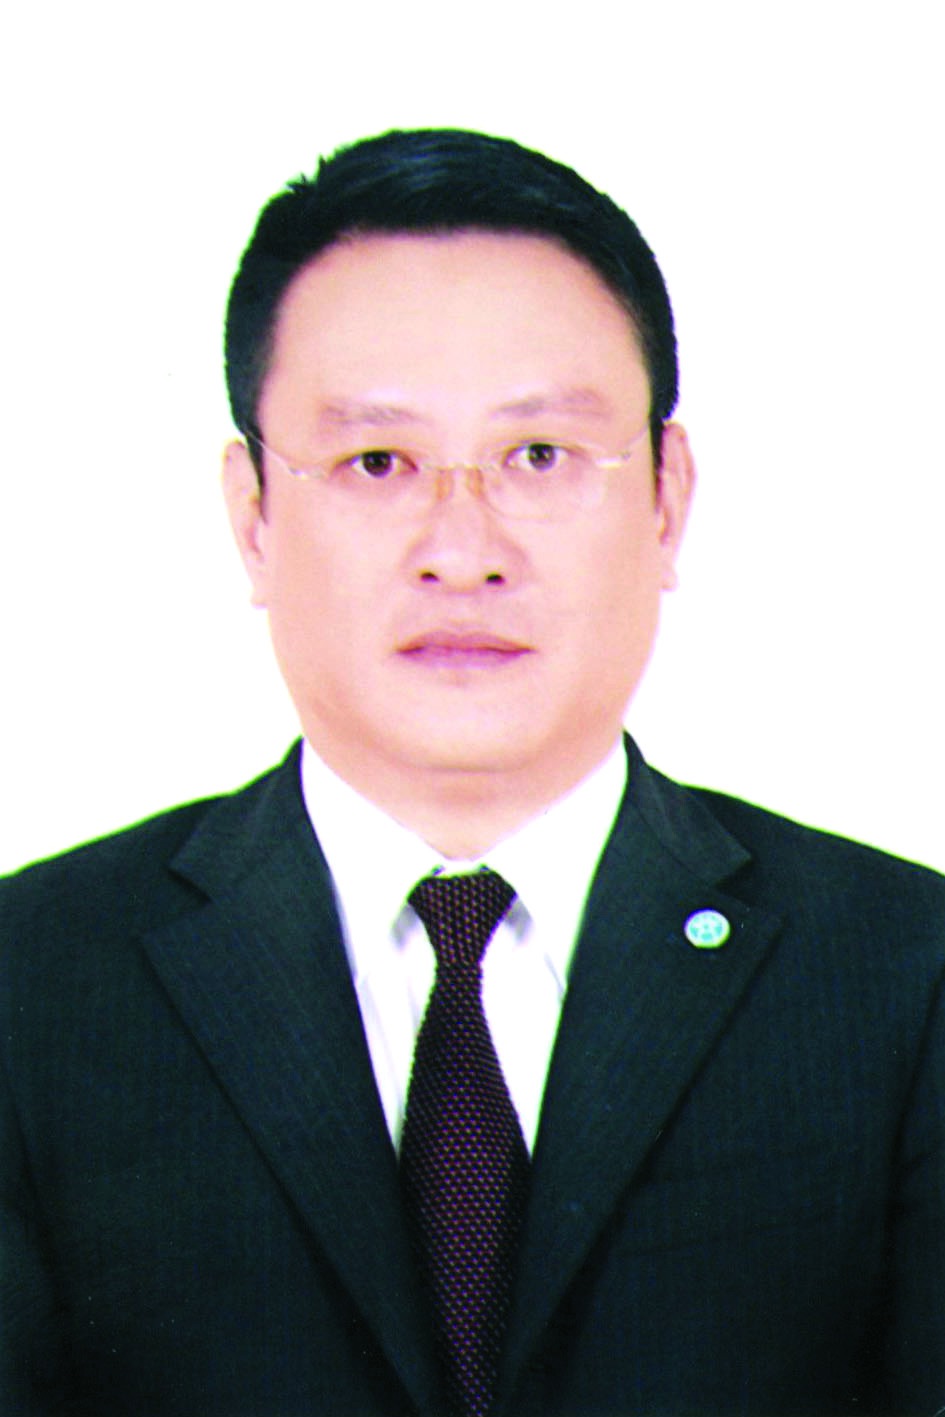 Chương trình hành động của ông Nguyễn Quang Thắng, ứng cử viên đại biểu HĐND TP Hà Nội nhiệm kỳ 2021 - 2026 - Ảnh 1